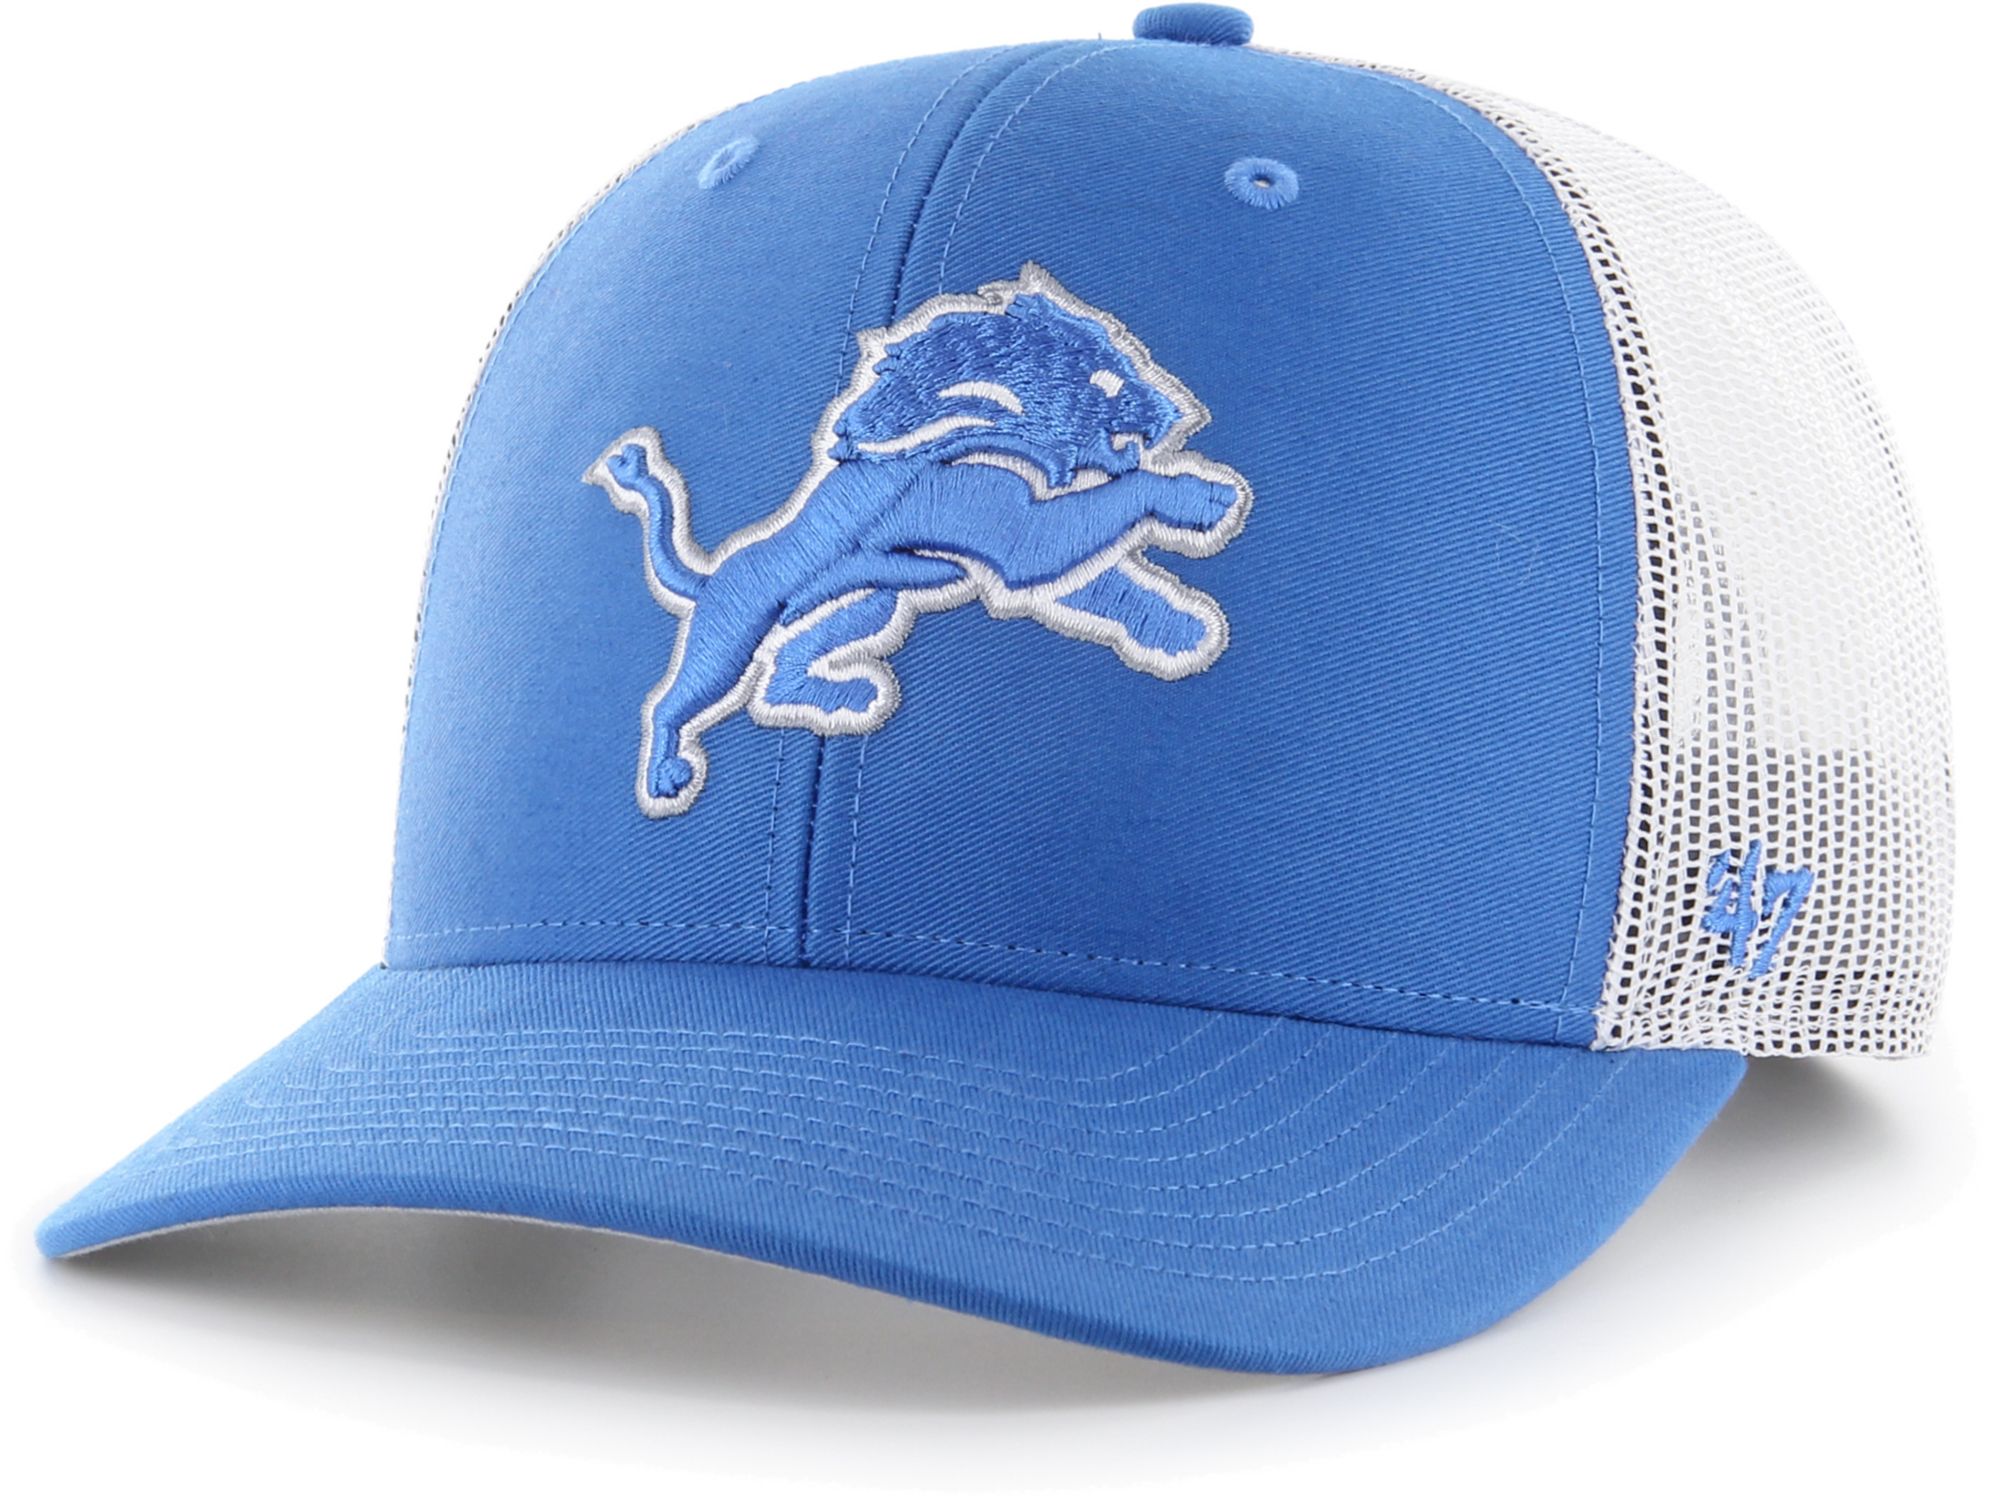 Detroit Lions blue logo cap